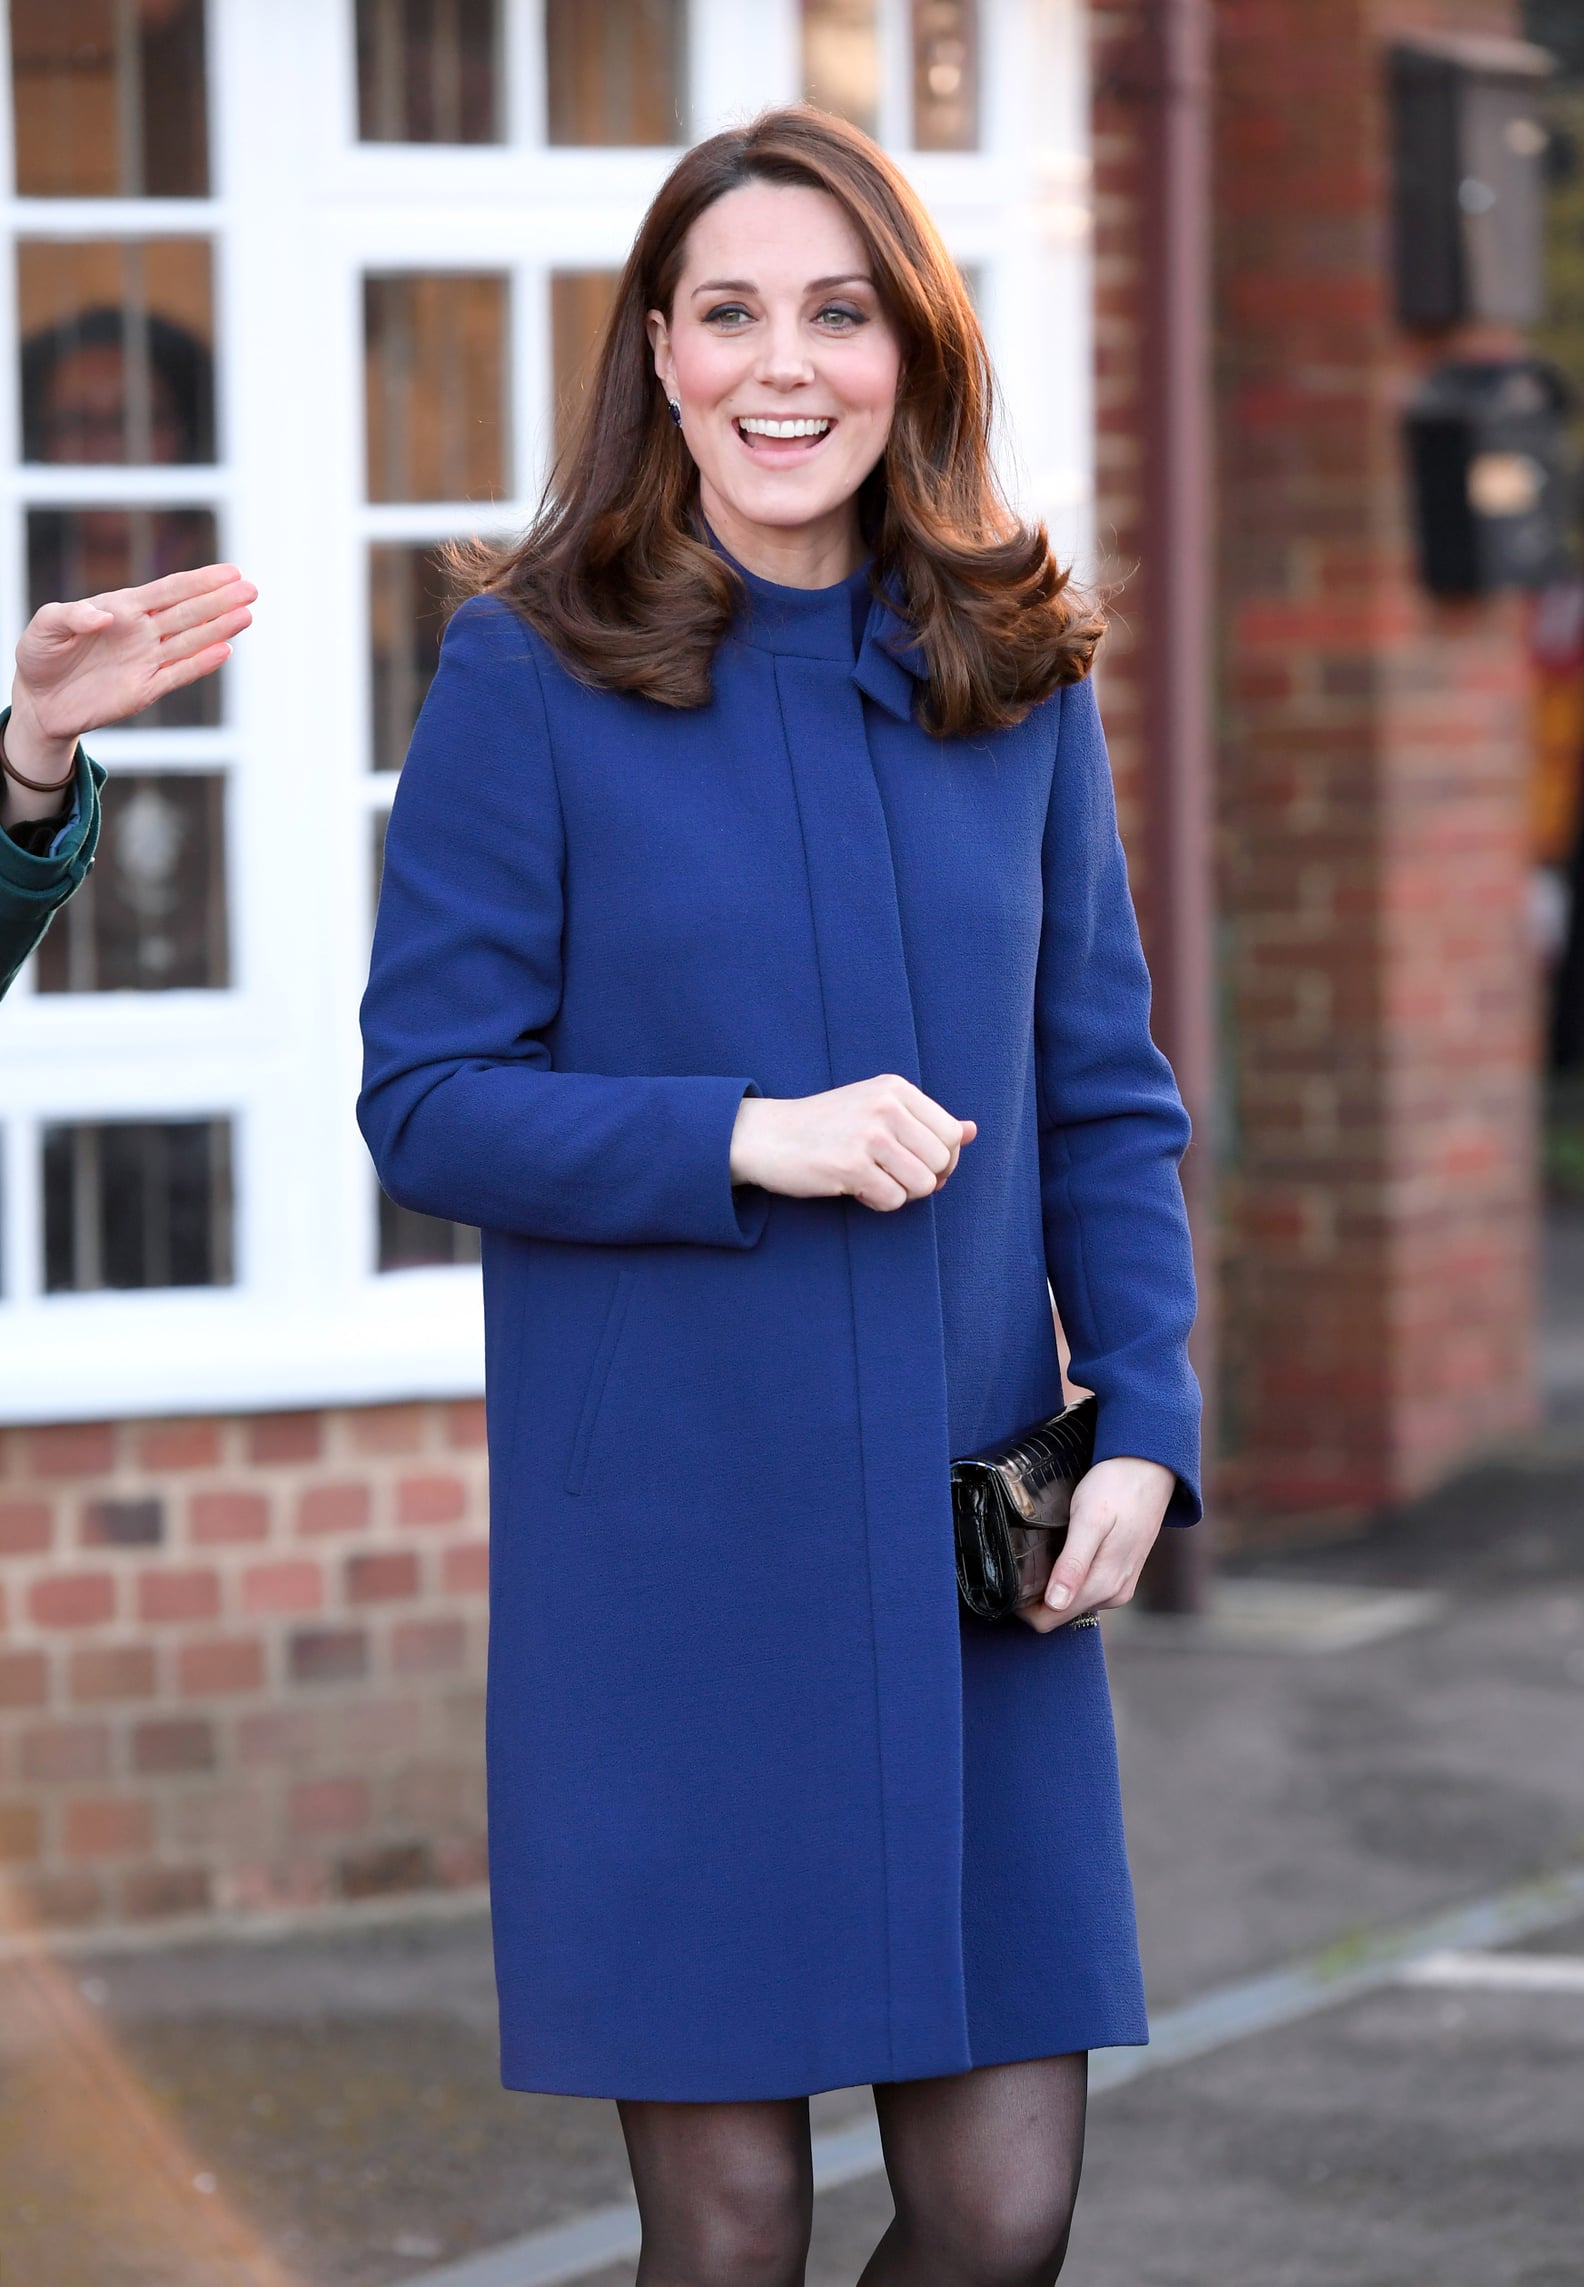 Kate Middleton Wearing Blue During Third Pregnancy | POPSUGAR Fashion